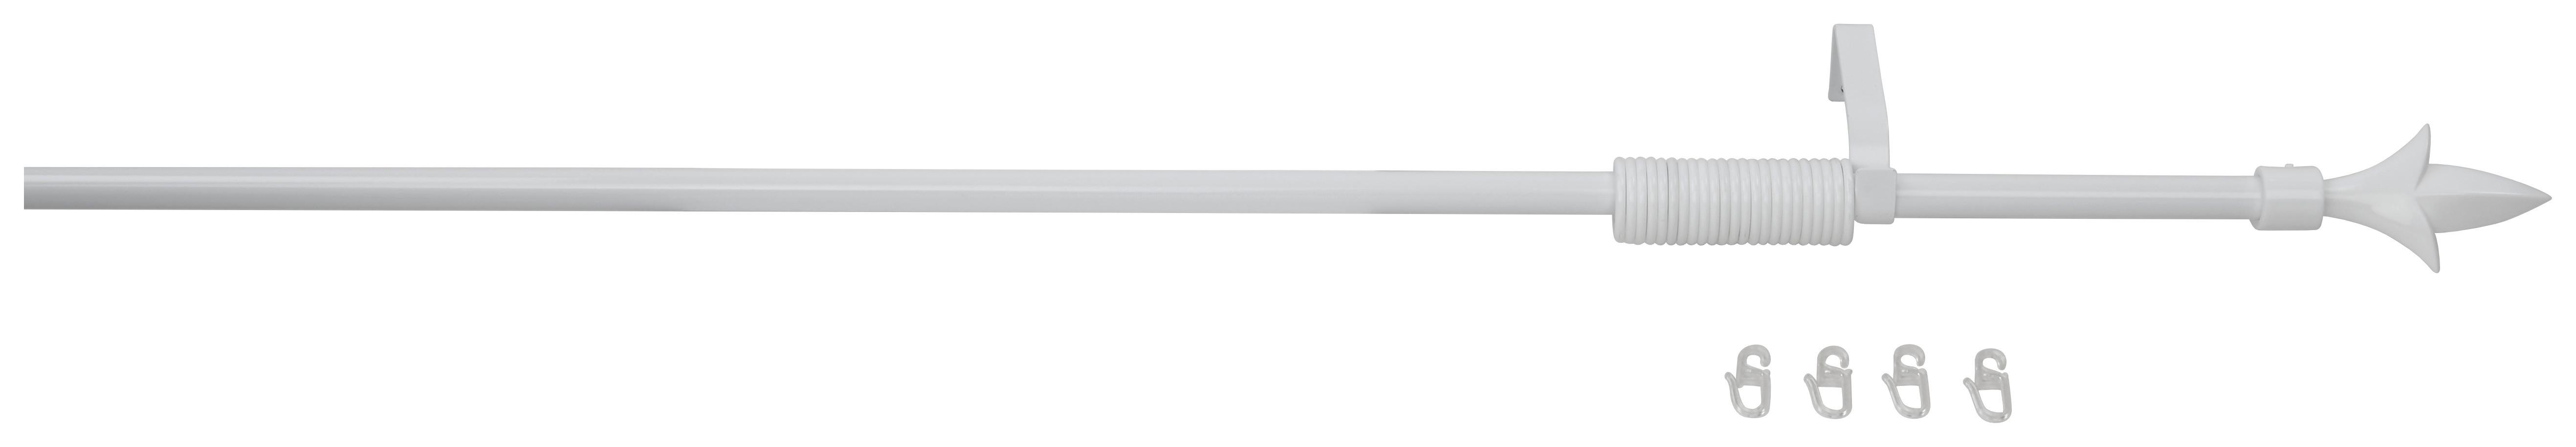 Rundstangengarnitur 1-Lfg Paul Weiß L: 130-240 cm - Weiß, KONVENTIONELL, Metall (130-240cm) - Ondega